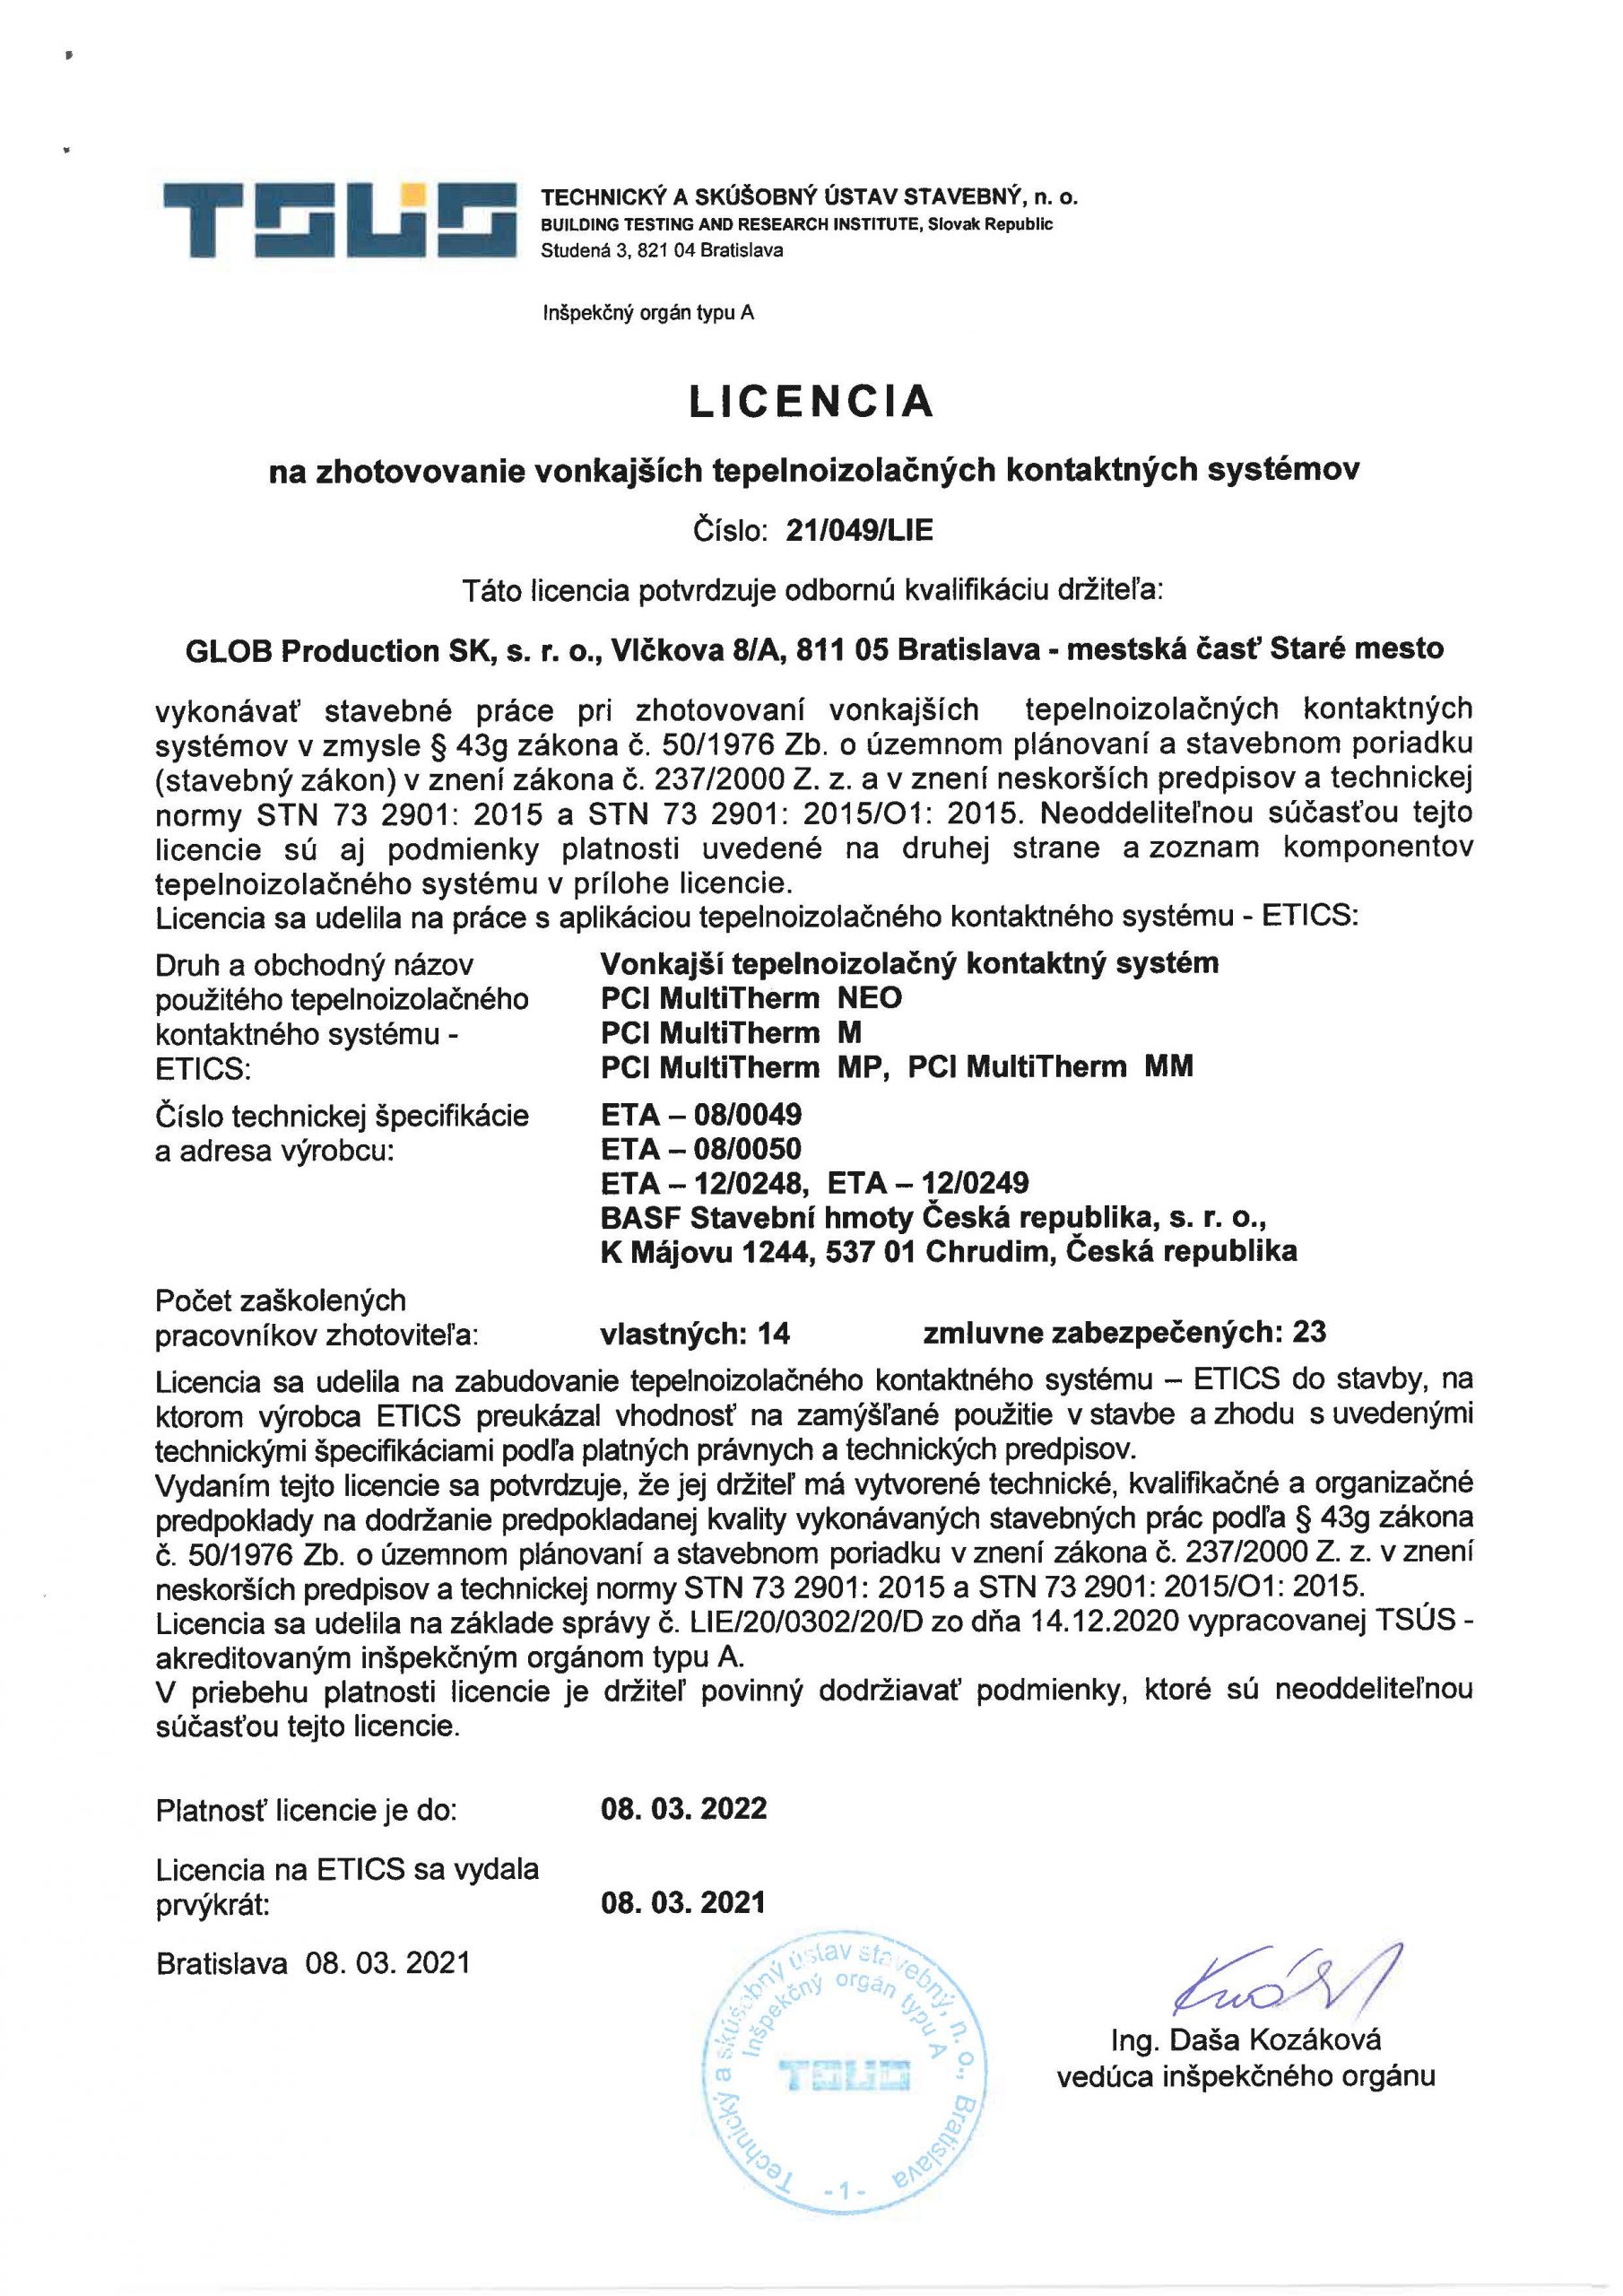 TSUS - Licencia PCI Multitherm